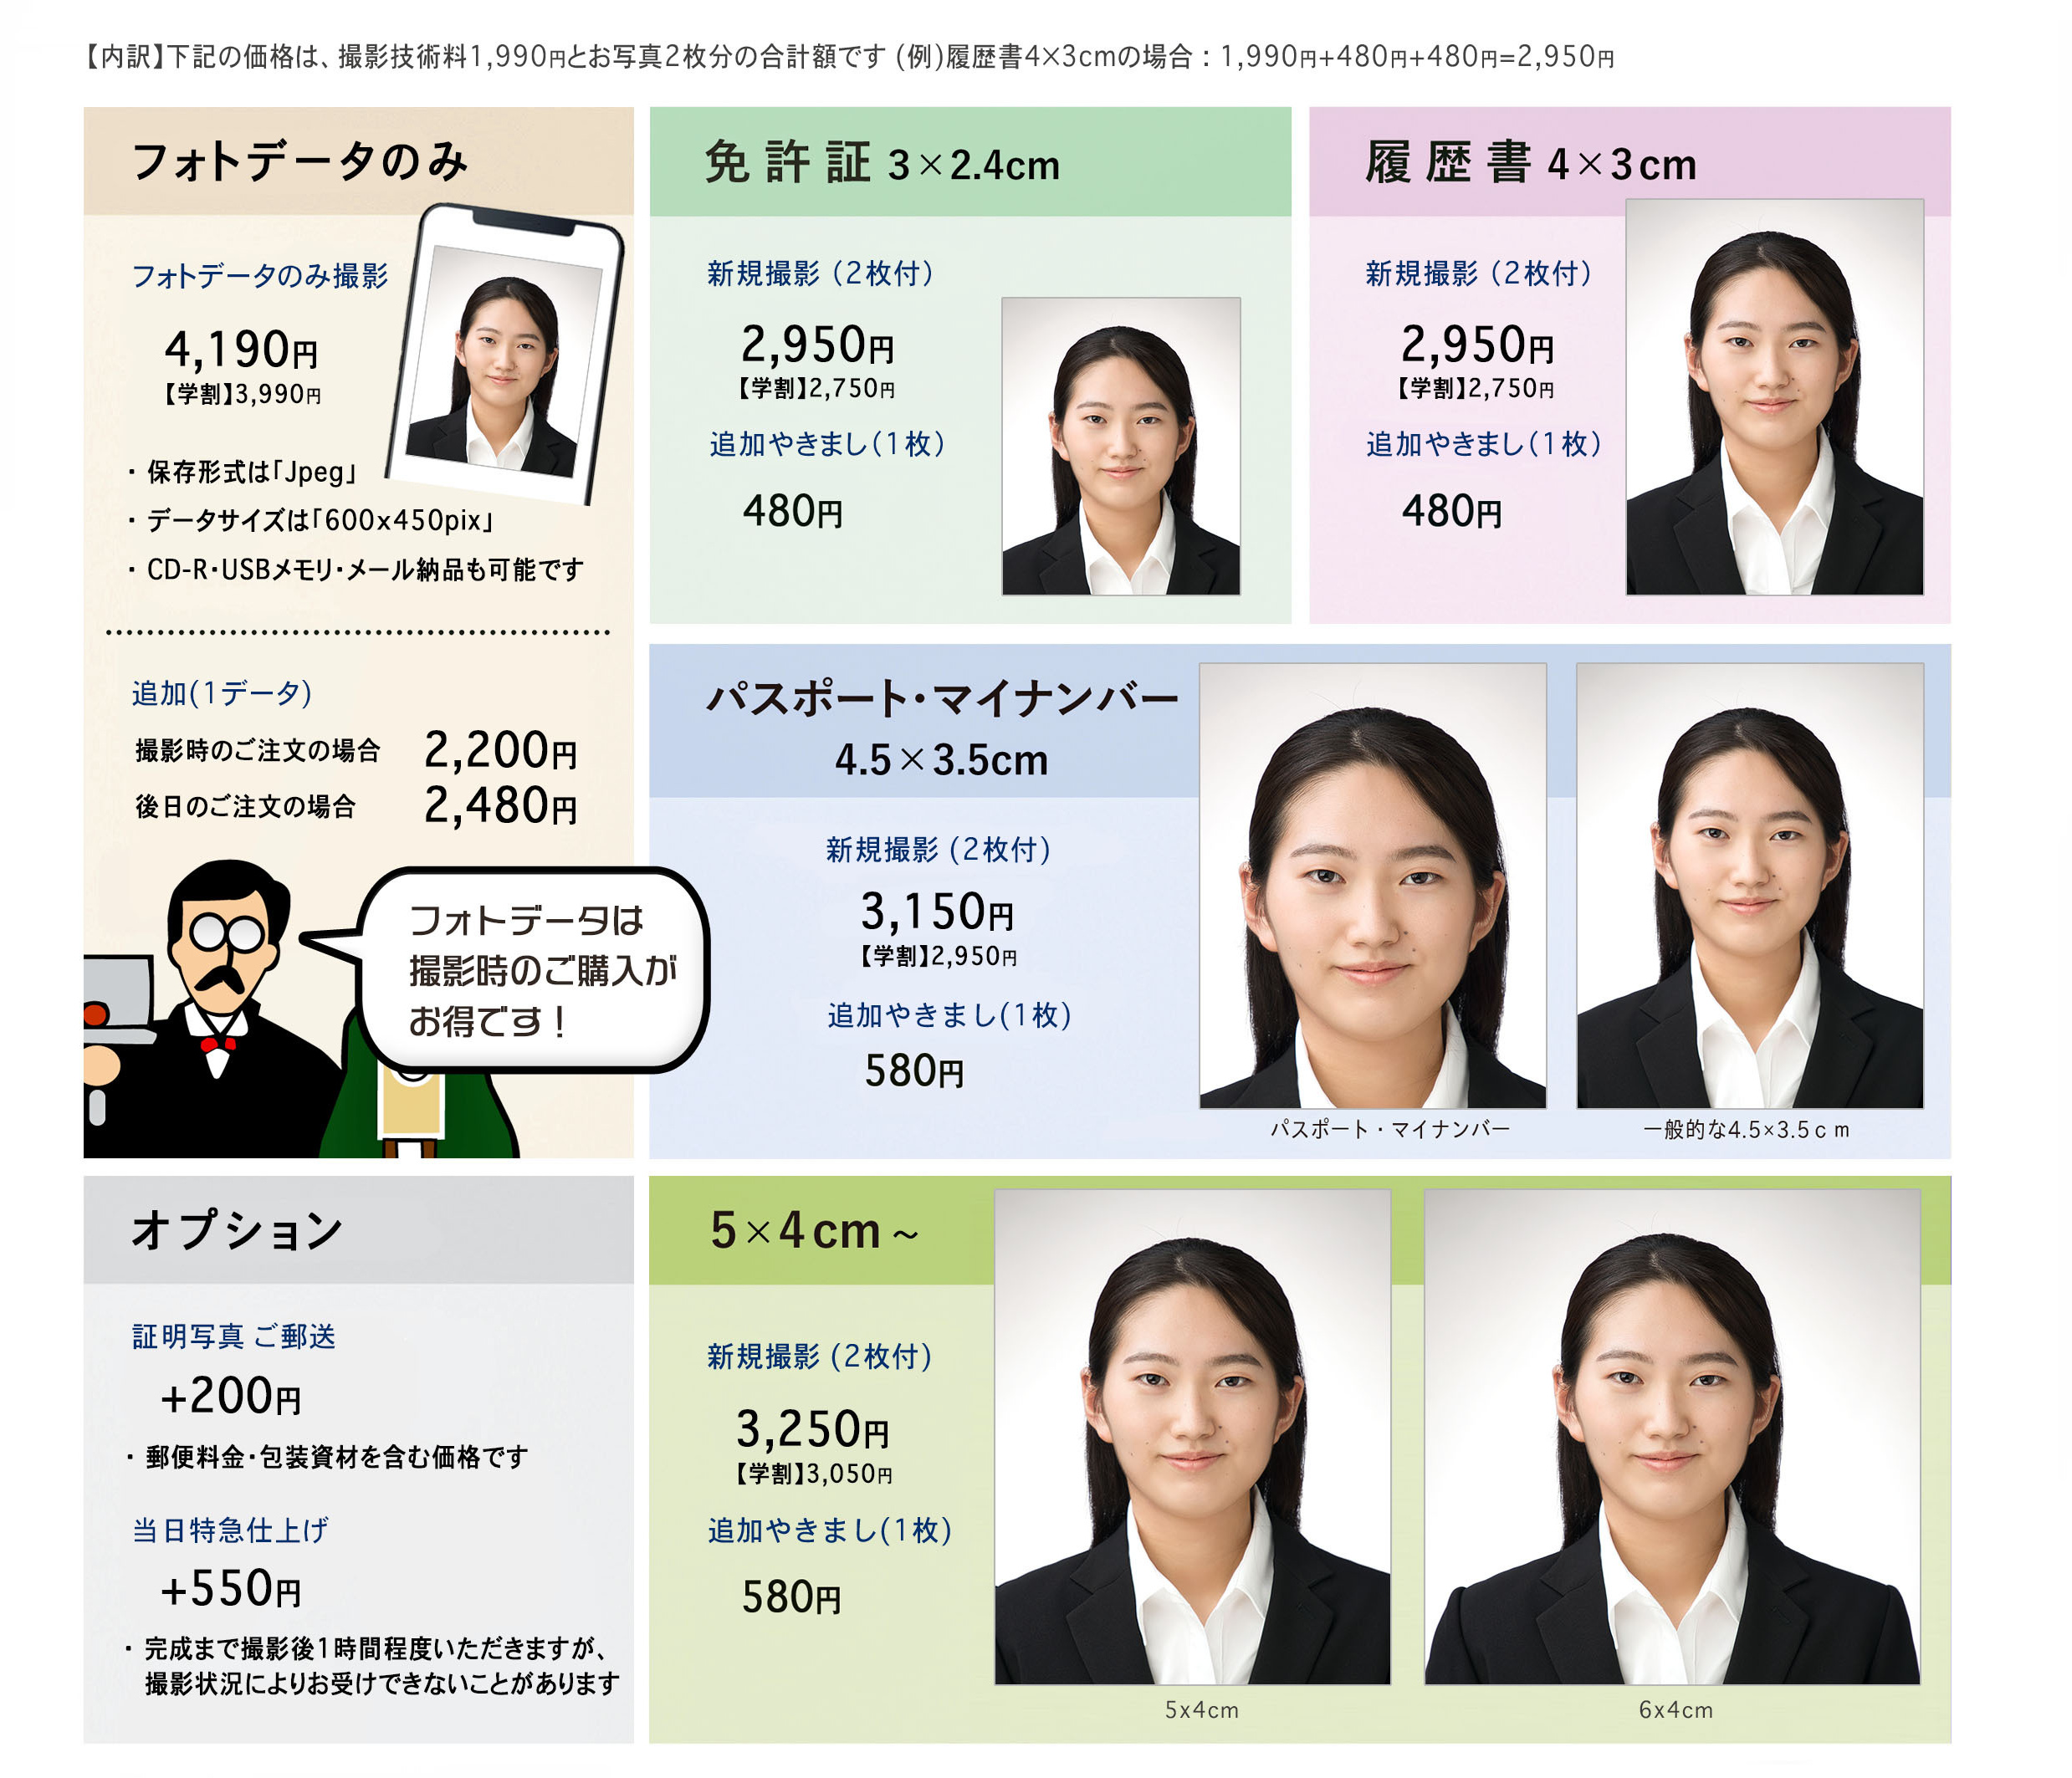 岡山市 証明写真 免許証 履歴書 デジタルデータ対応 パスポート マイナンバー 5×4 4×3 ハローワーク用 3×2.4 3×2.5 各国ビザ フォトデータ